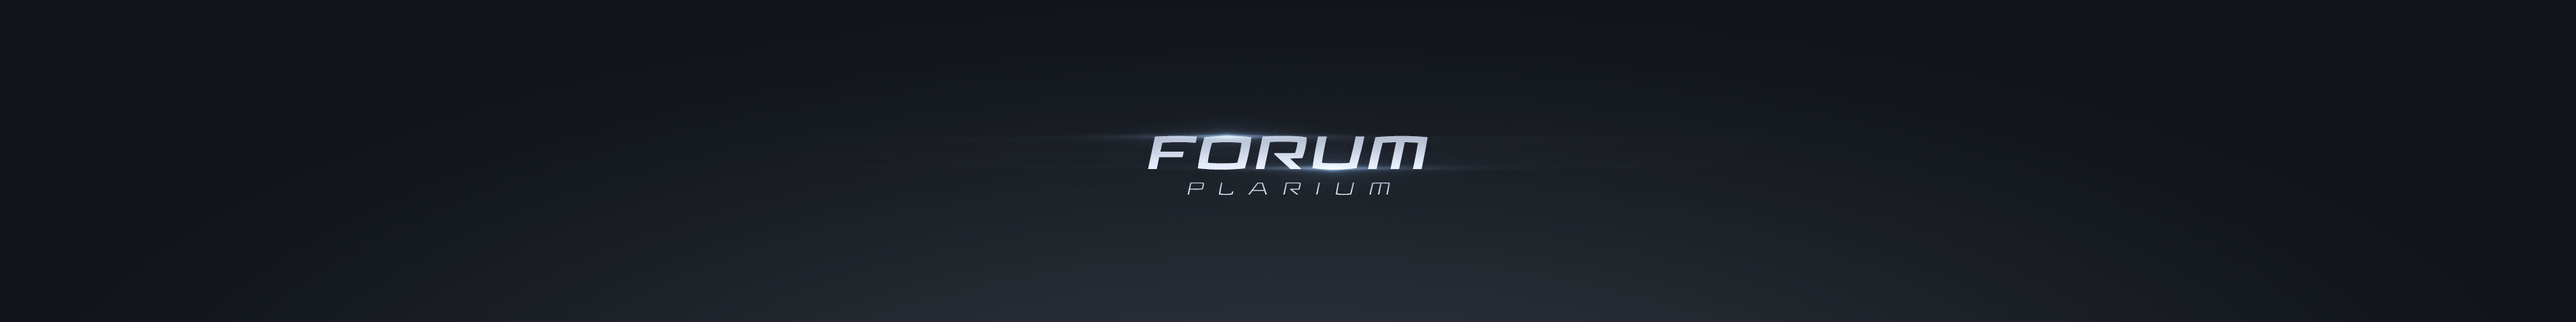 Официальные правила форума